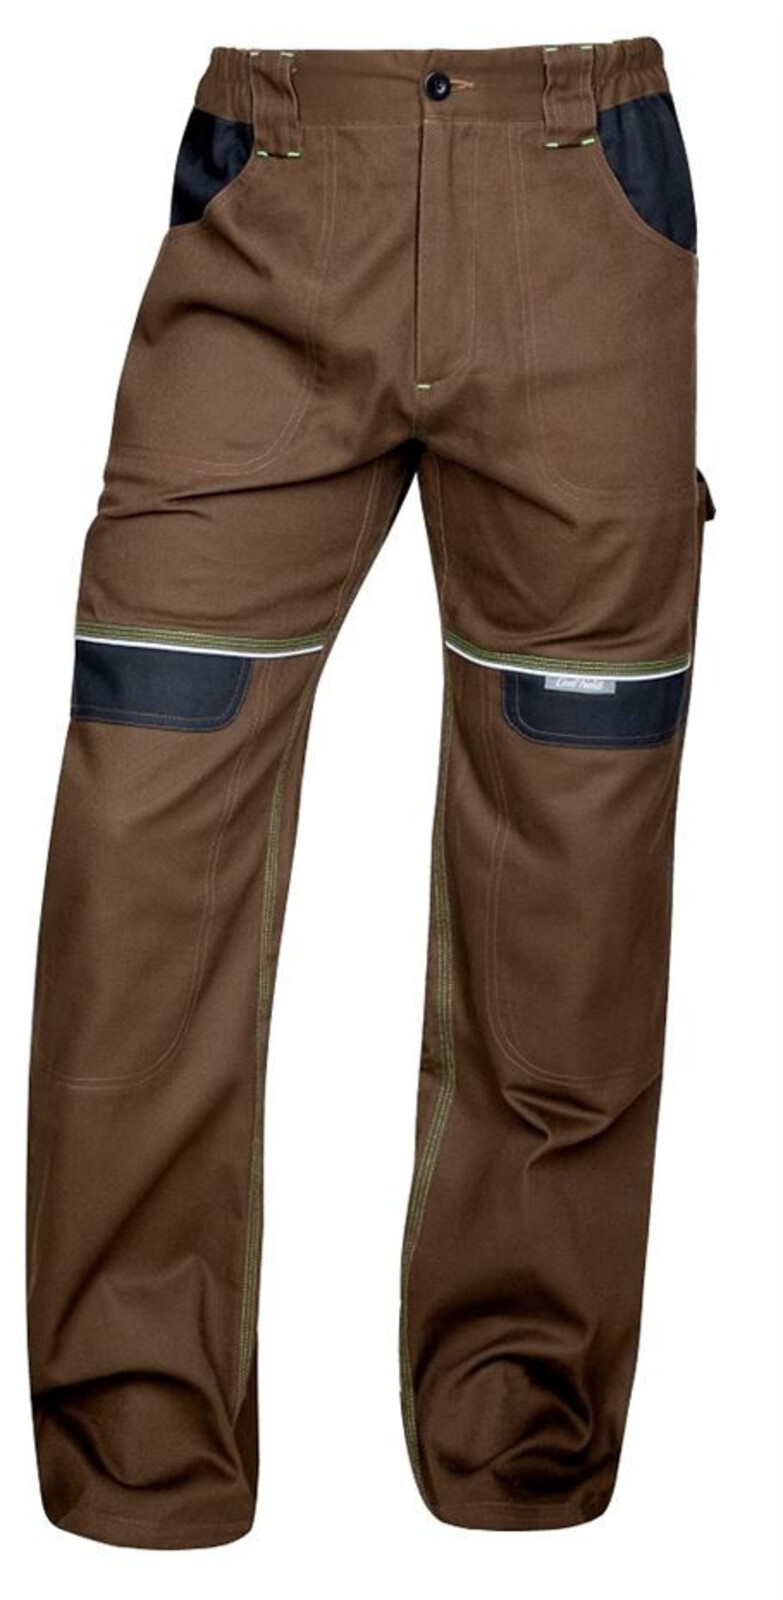 Pánske montérkové nohavice do pása Ardon Cool Trend - veľkosť: 58, farba: hnedá